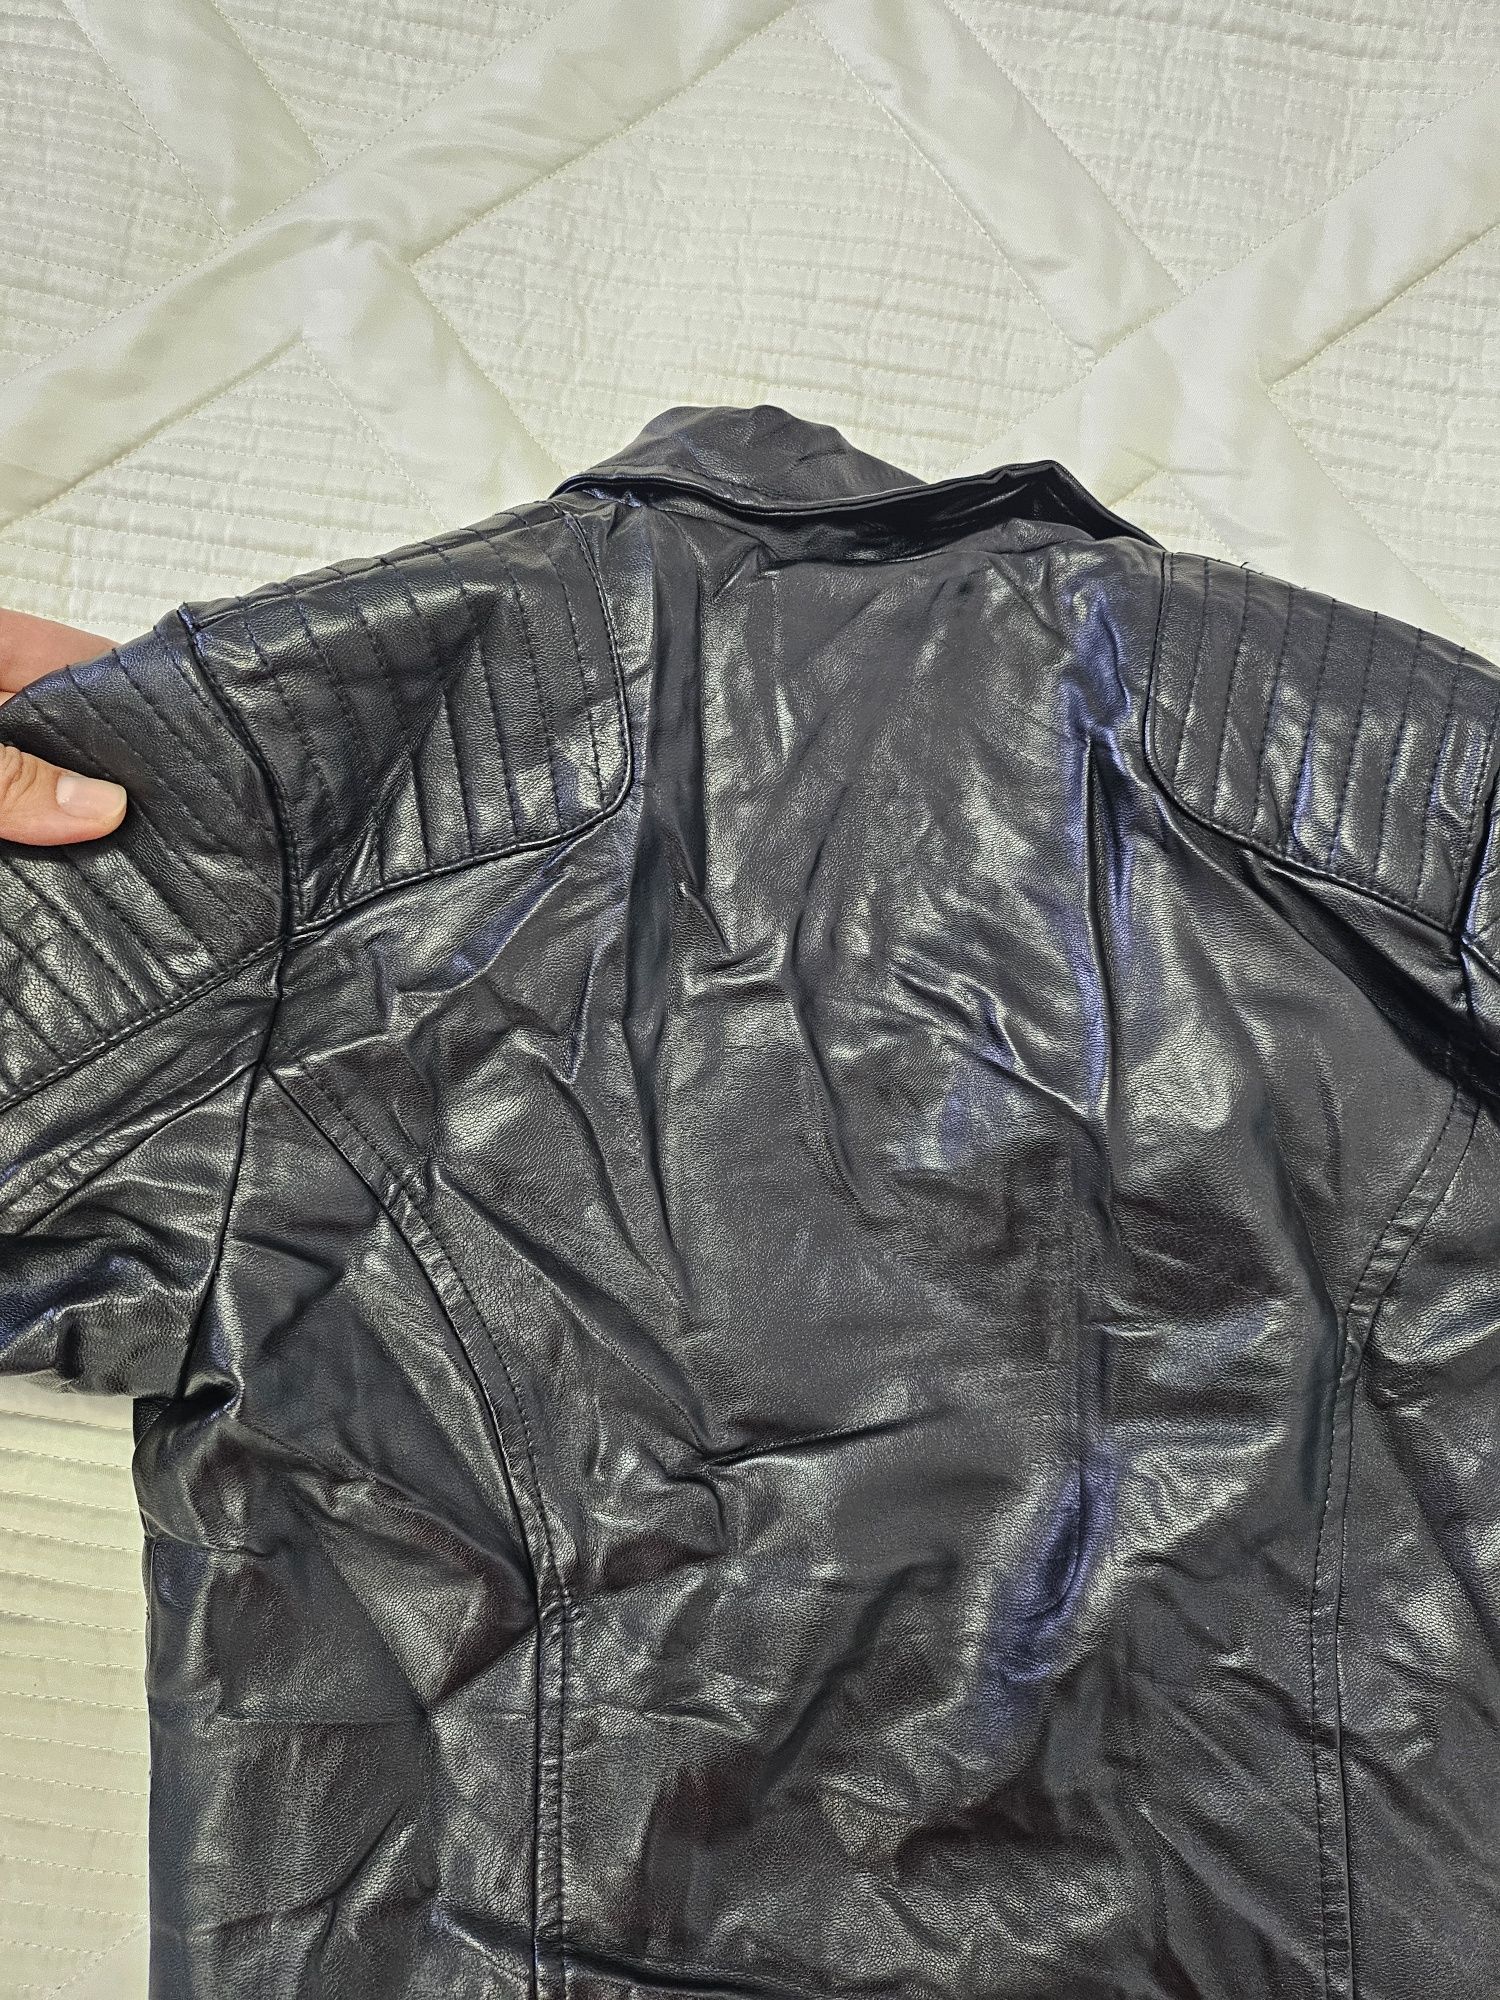 Продаю кожаный пиджак возраст указан на этикетке,надевали 2 раза